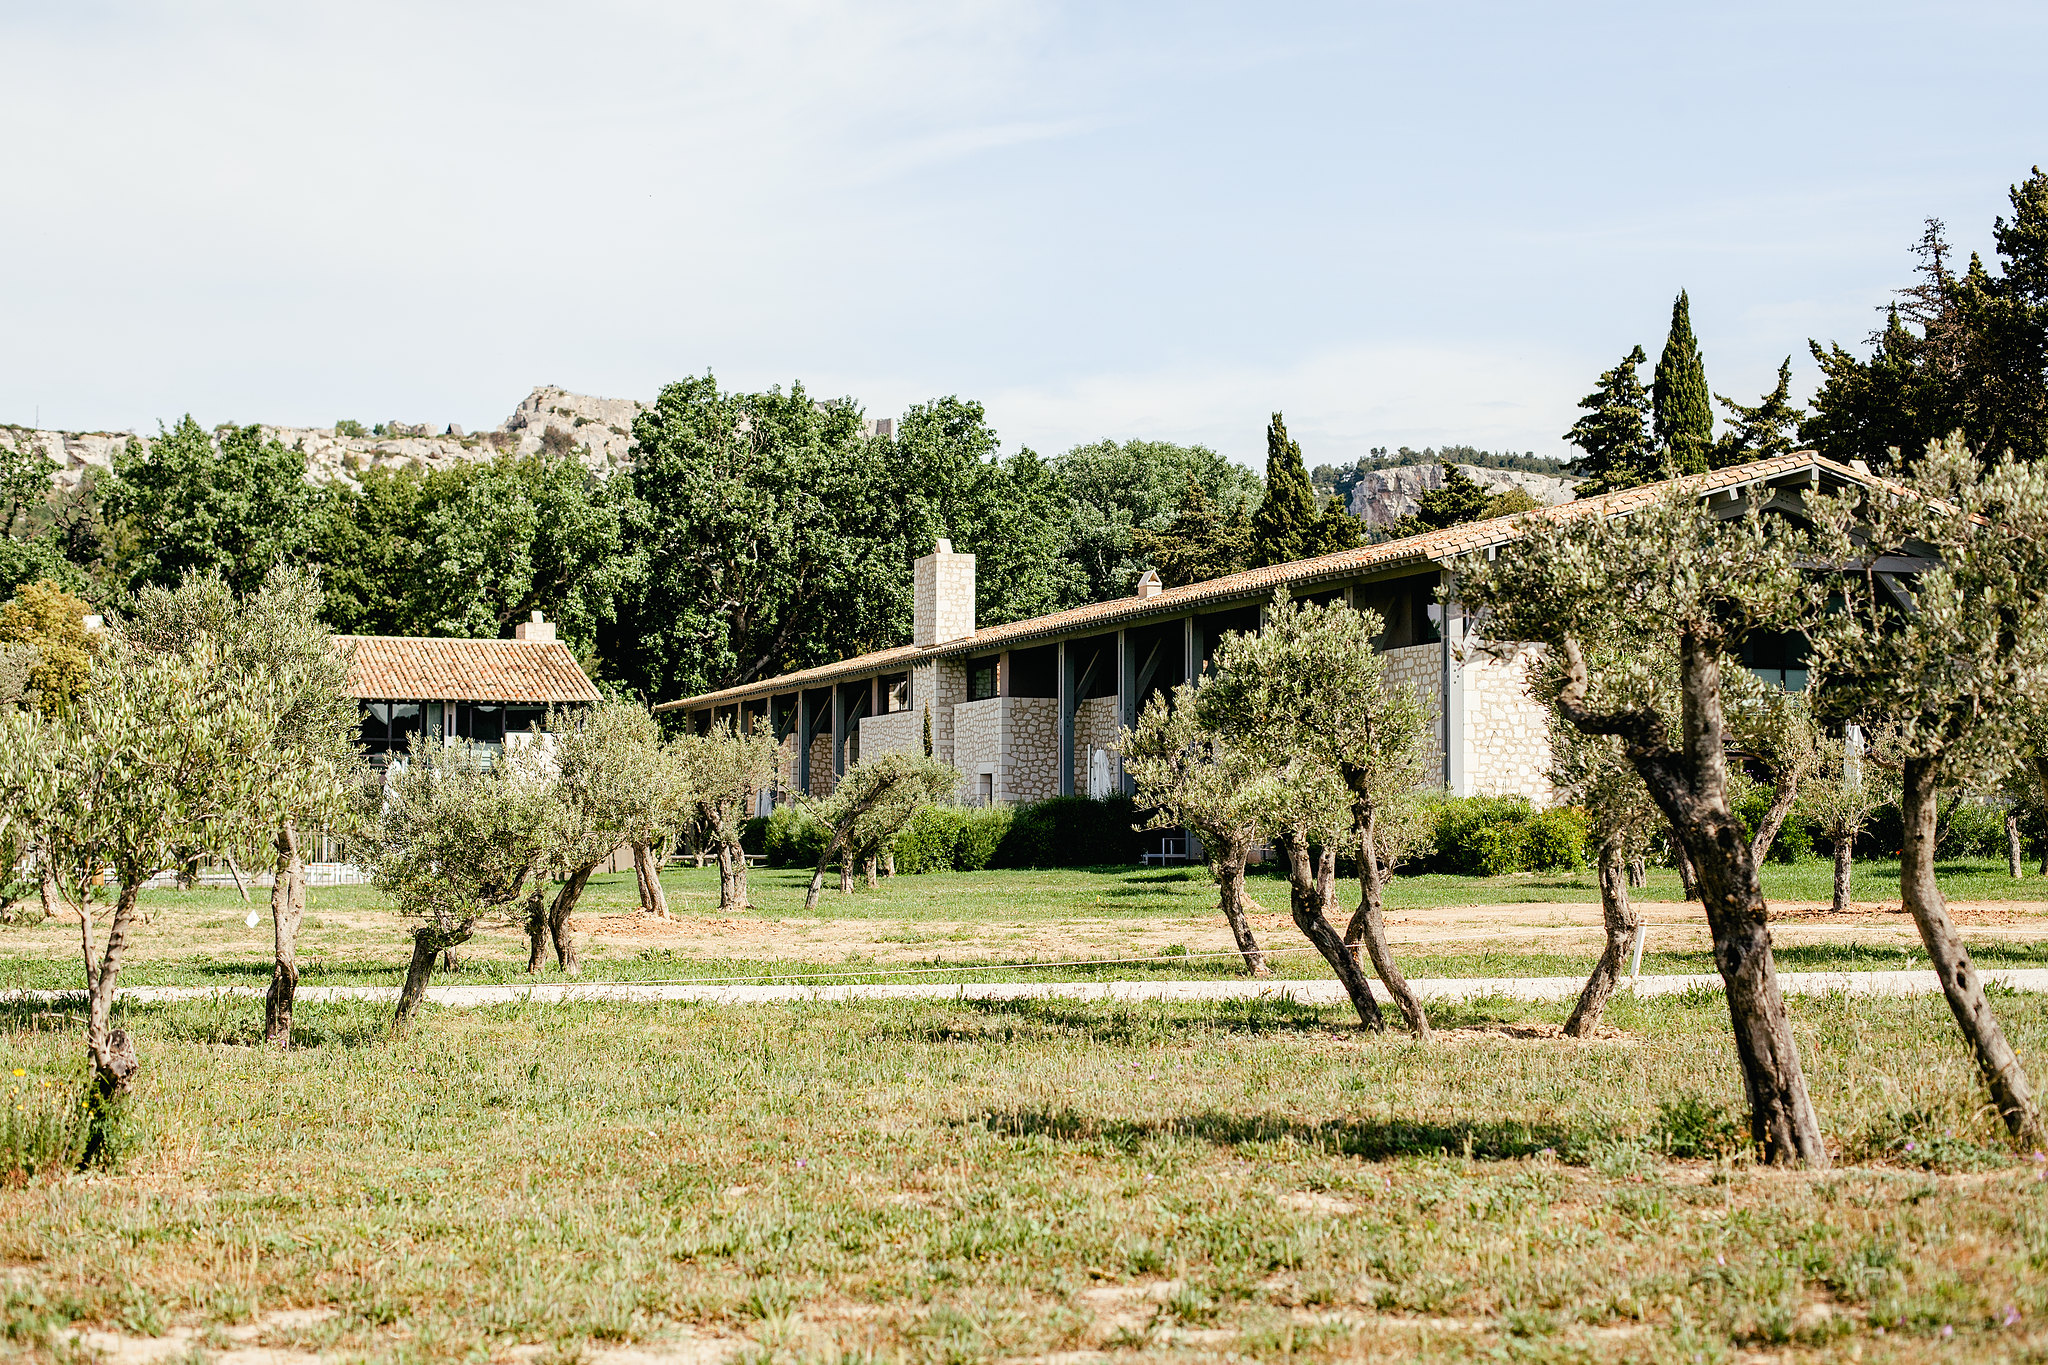 Domaine de Manville, La Provence